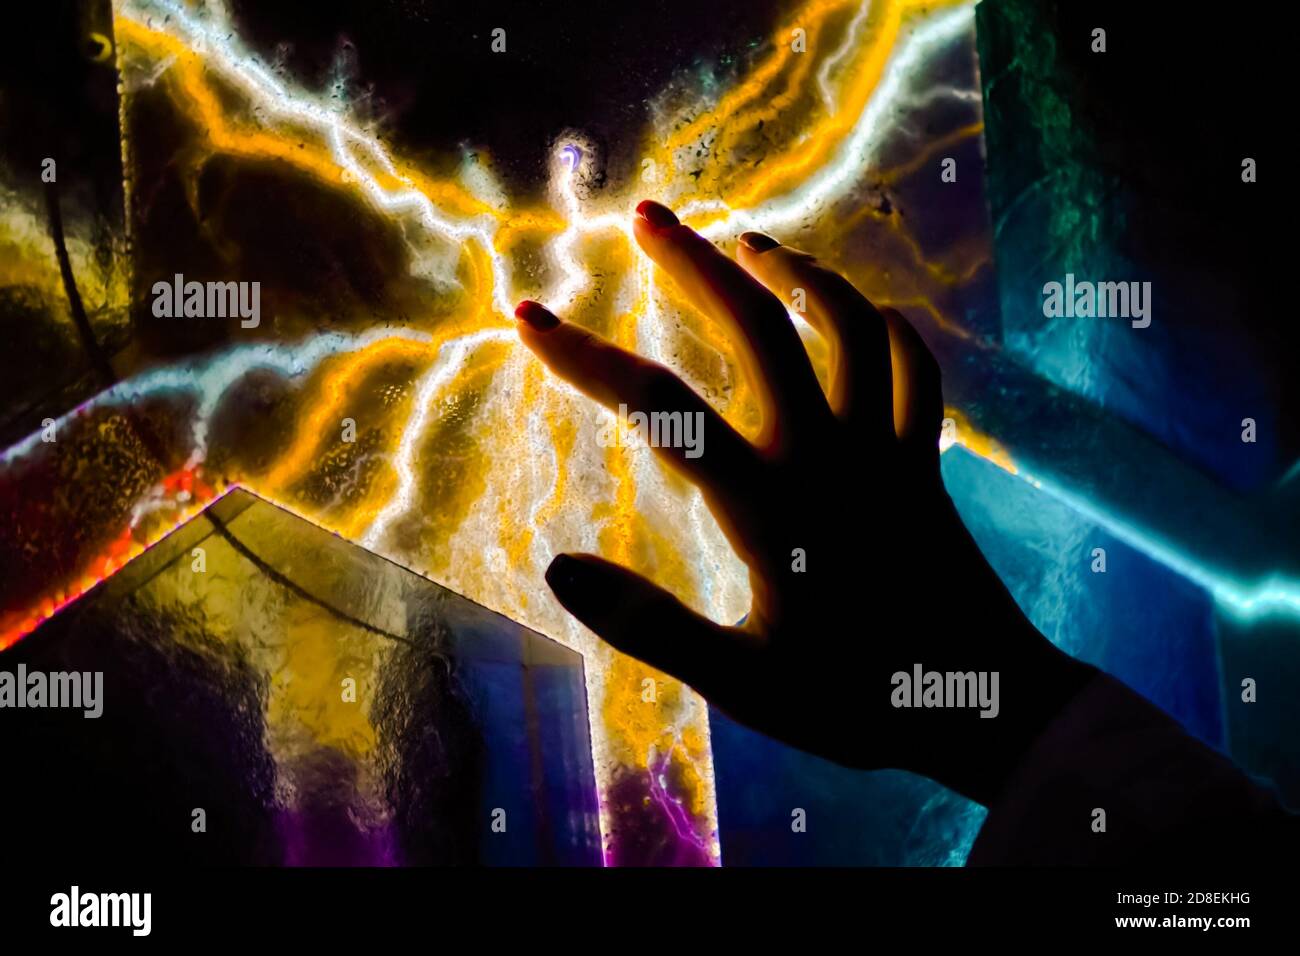 Exposition interactive à écran tactile dans le musée des sciences. Femme à la main touchant l'écran plasma coloré dans la pièce sombre - vue rapprochée. Électricité Banque D'Images